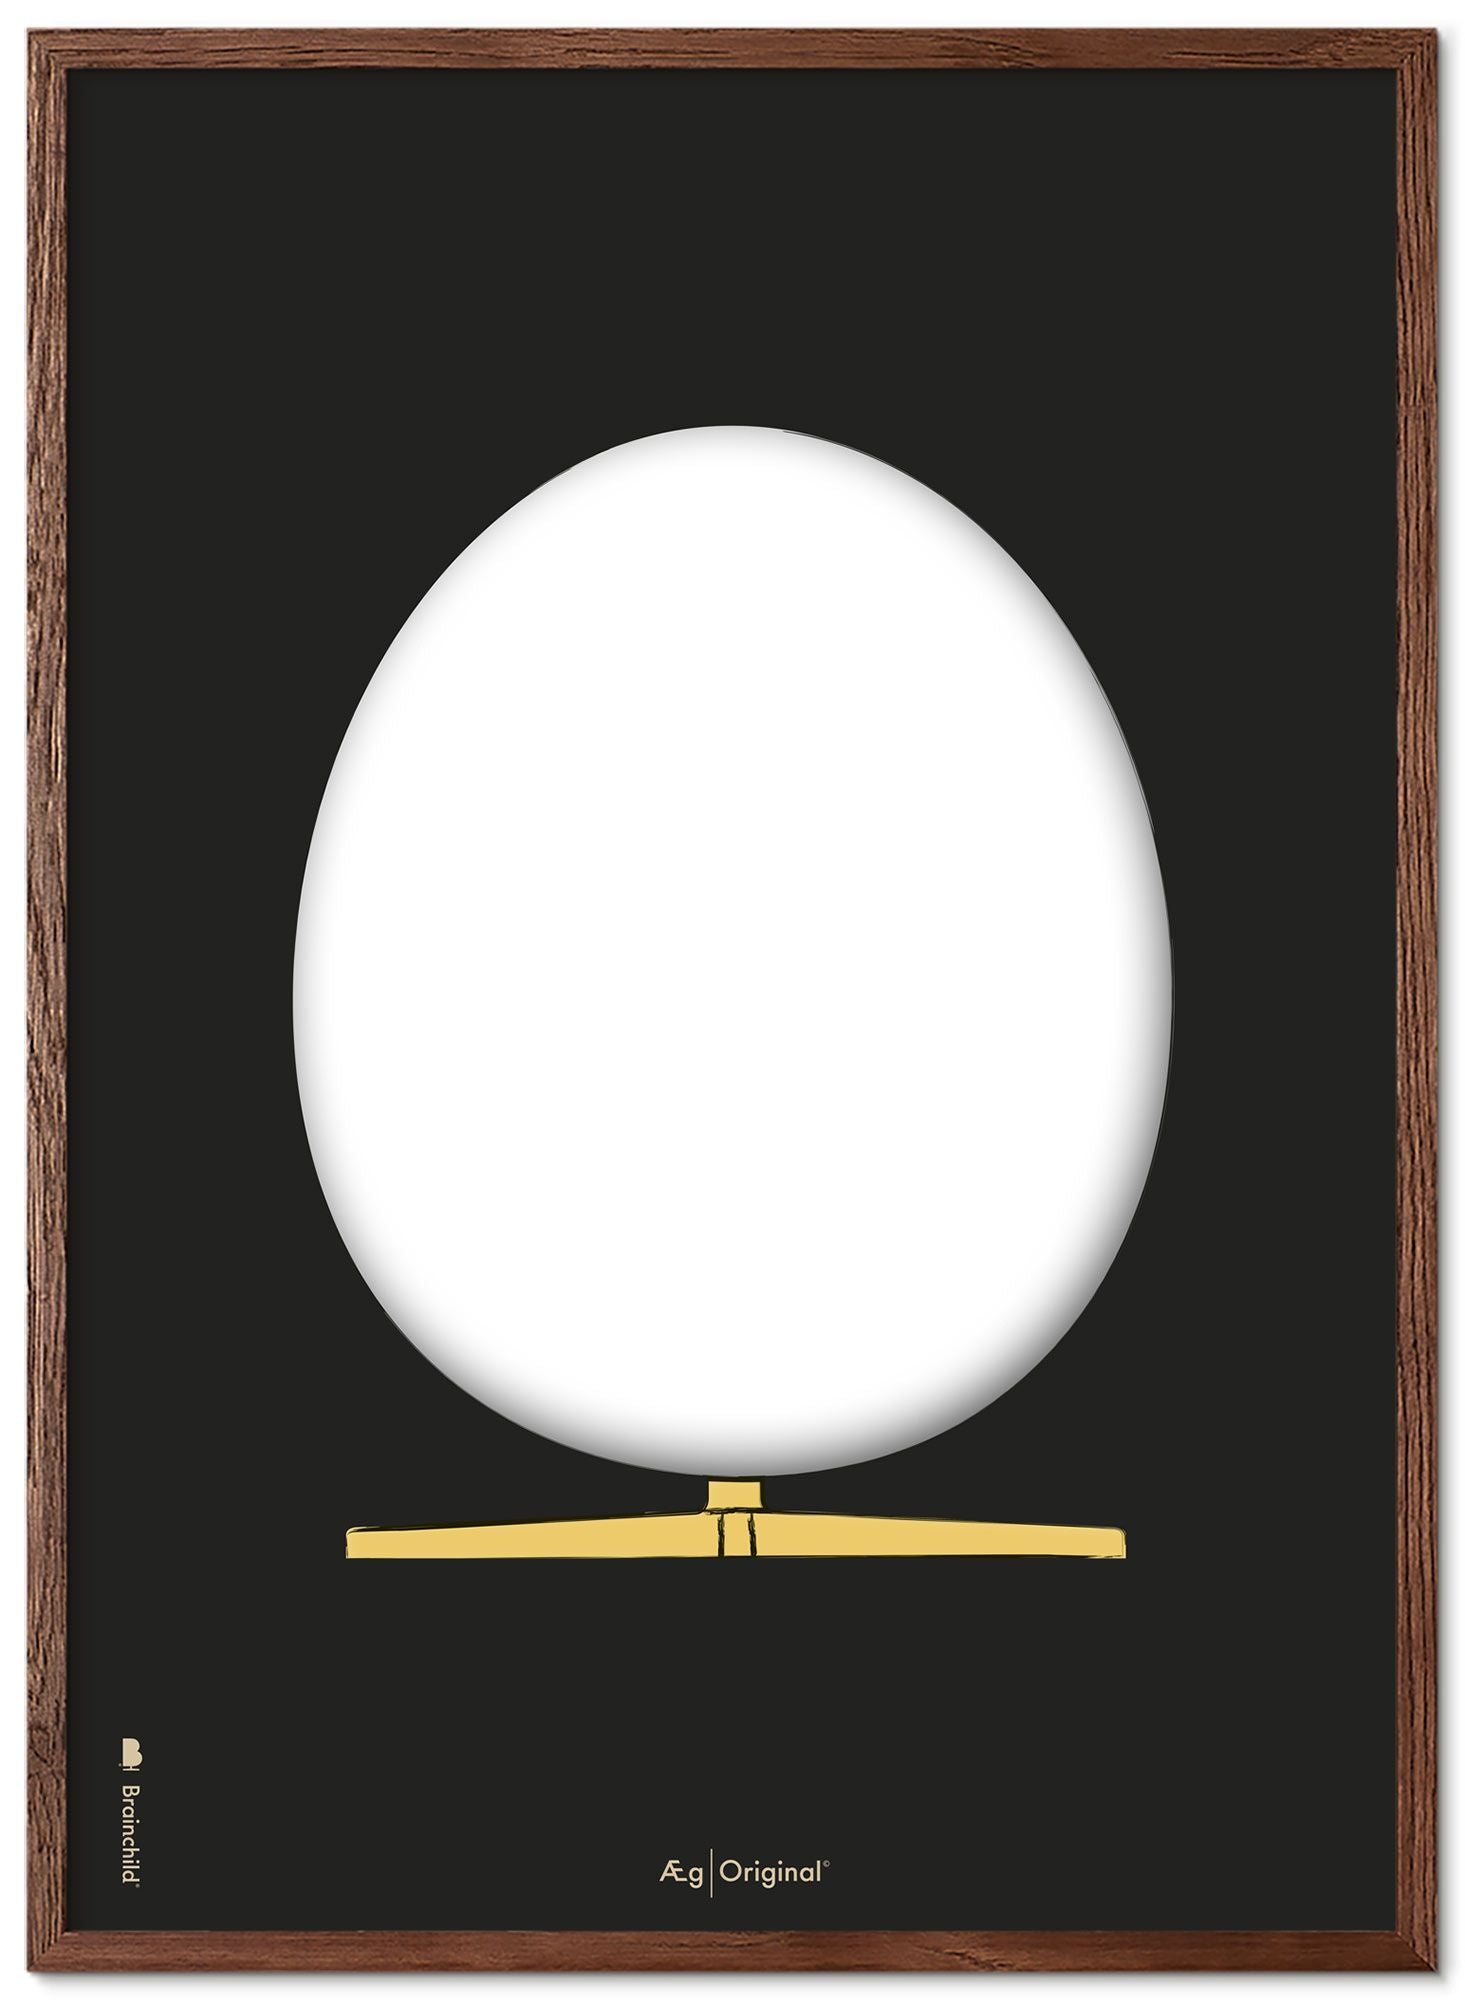 Brainchild The Egg Design Sketch Poster Frame Made Of Dark Wood A5, Black Background